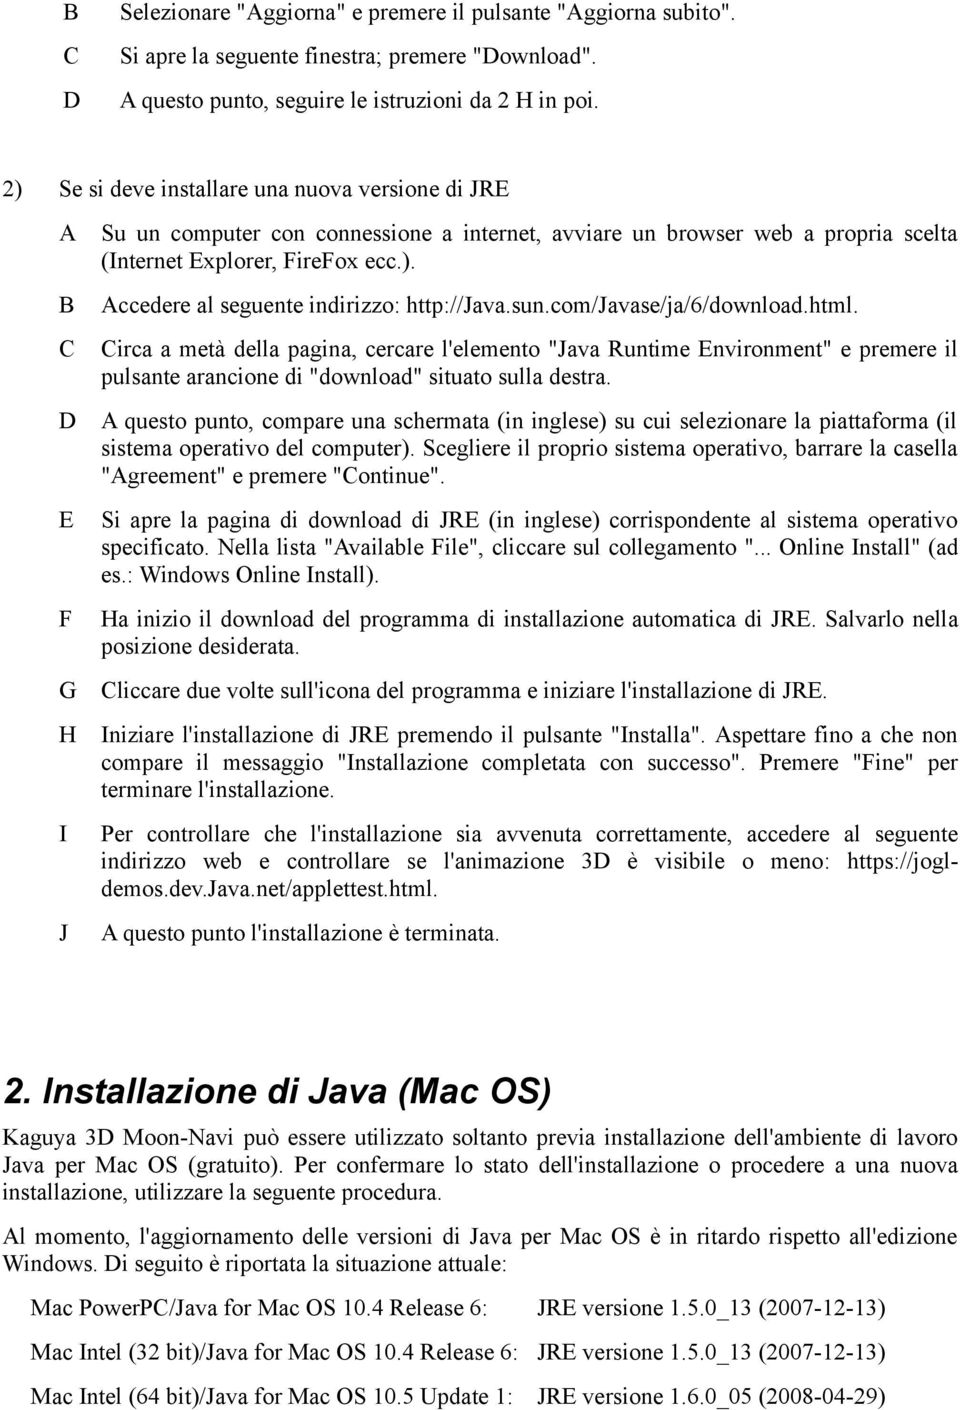 sun.com/javase/ja/6/download.html. Circa a metà della pagina, cercare l'elemento "Java Runtime Environment" e premere il pulsante arancione di "download" situato sulla destra.